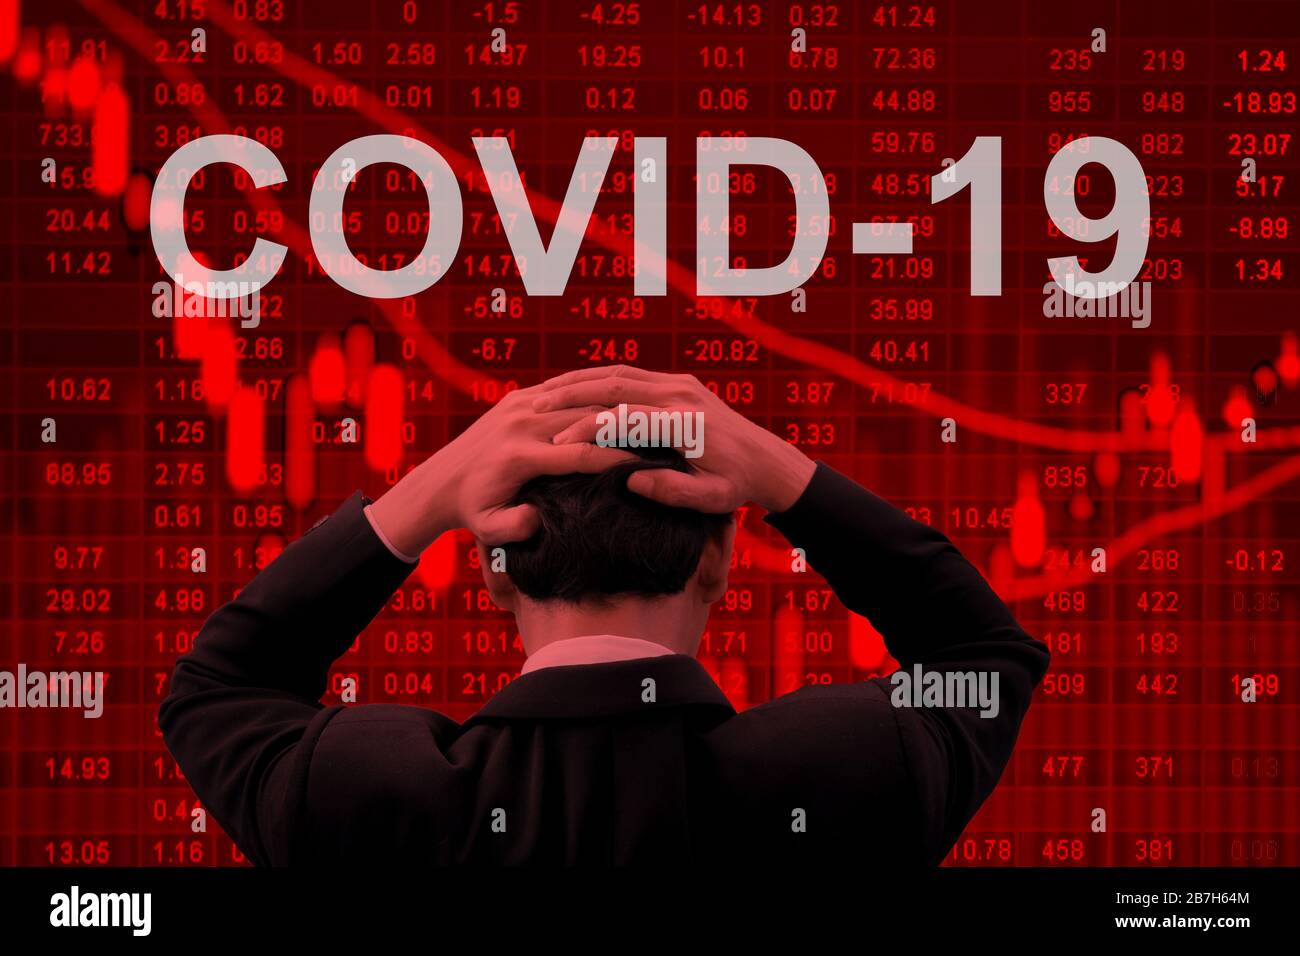 Epidemia de Covid-19 que hace que la economía mundial se encuentra en una grave crisis. Foto de stock